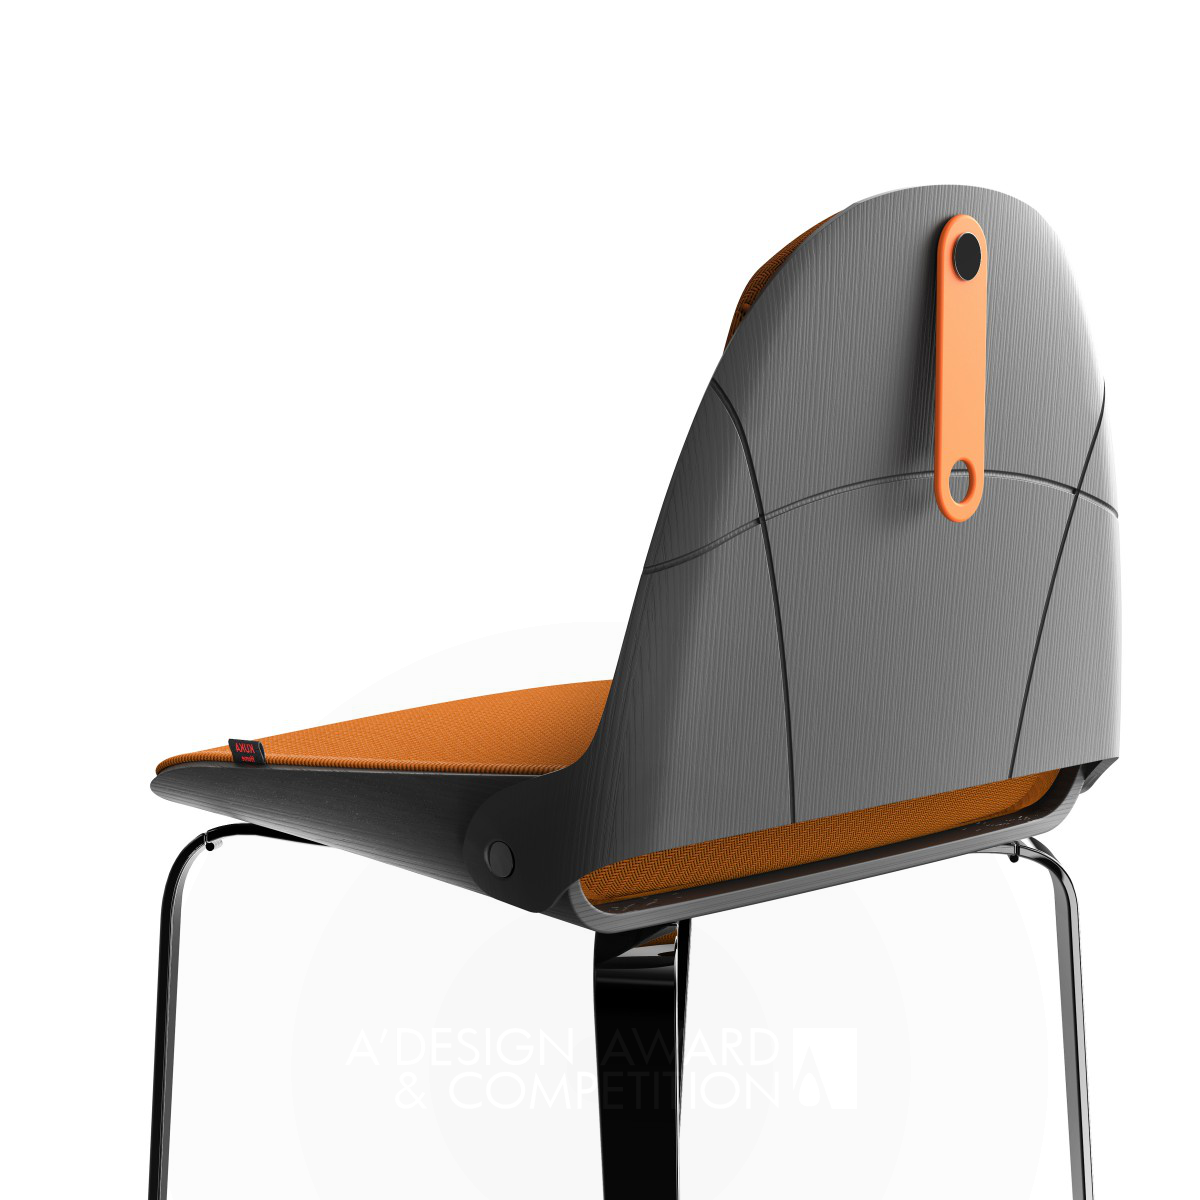 Edoardo Accordi设计的便携式椅子"Lu"